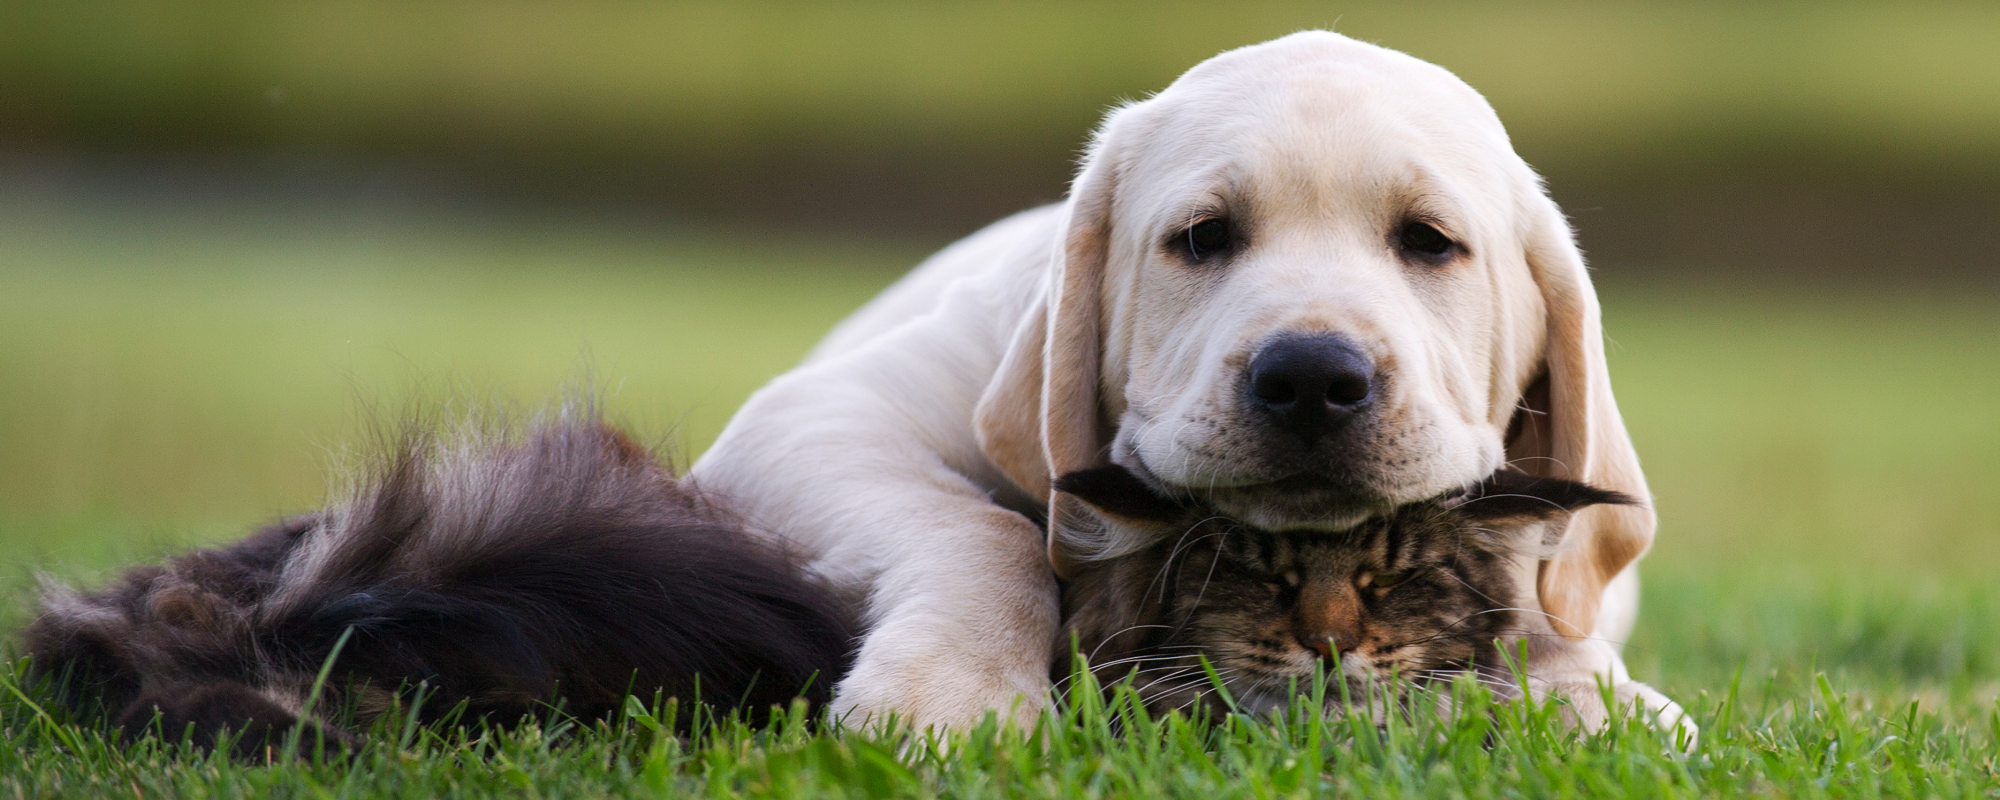 Puppy & Cat Header